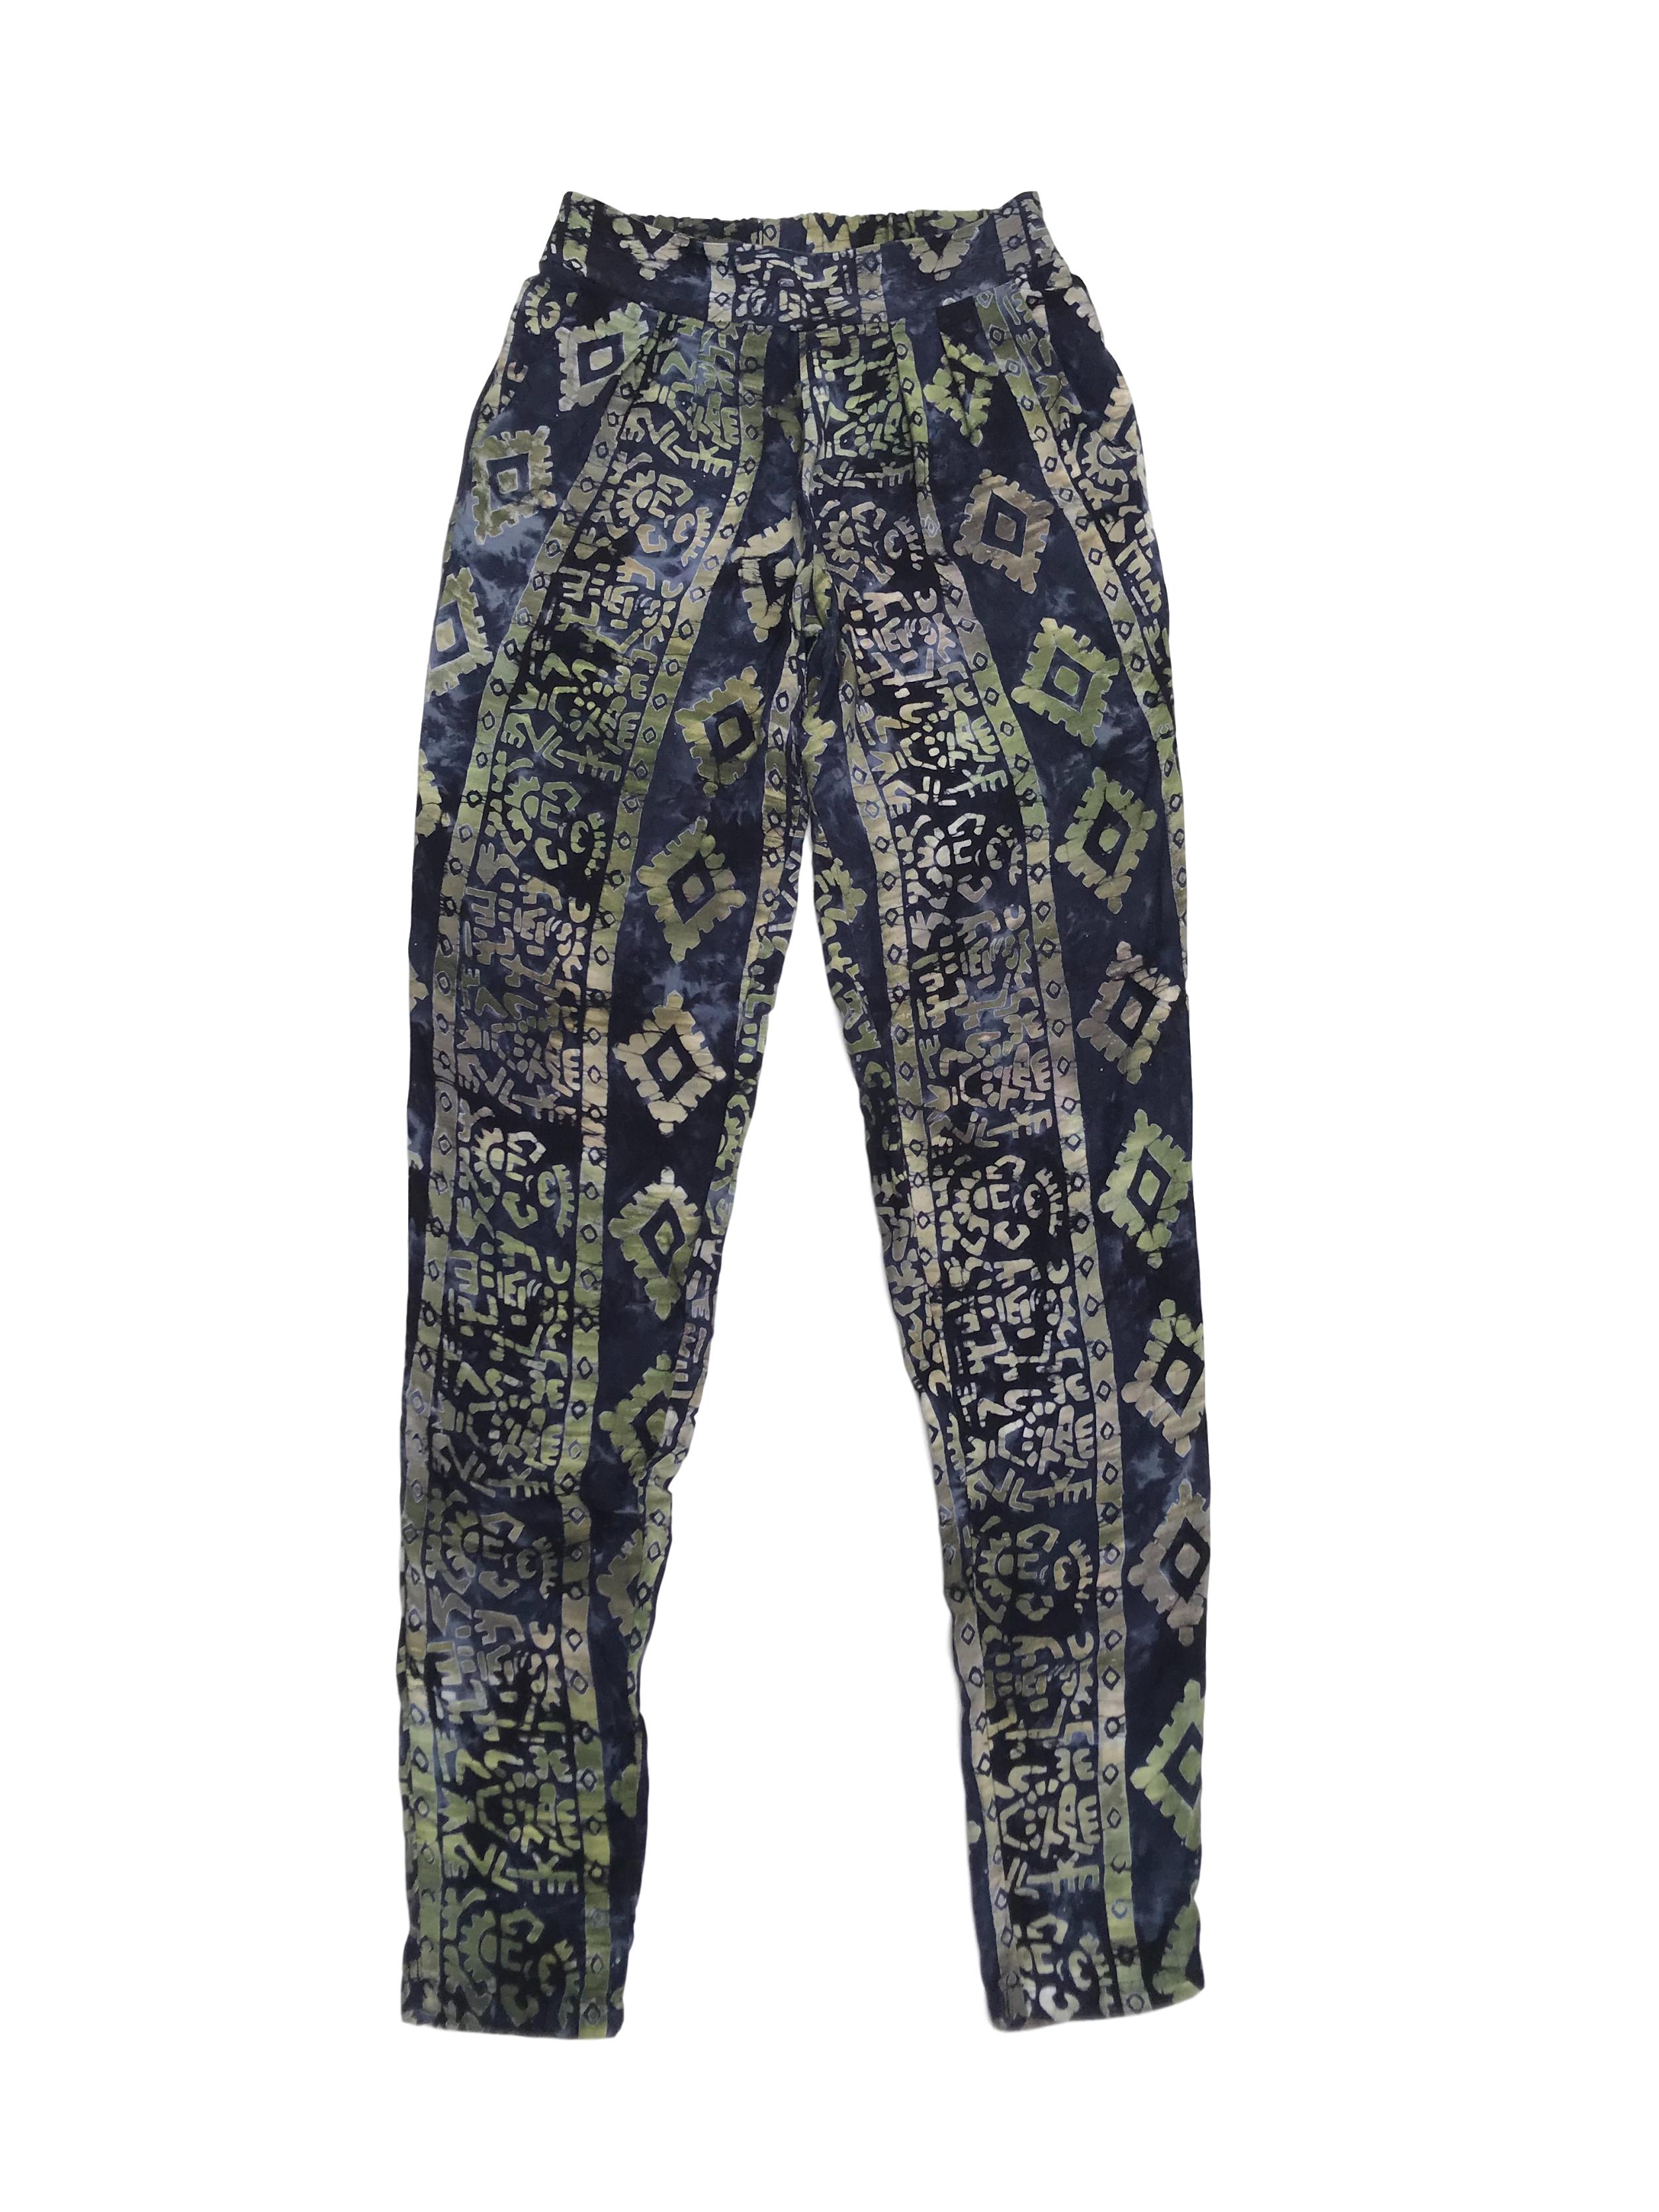 Pantalón fresco 100% algodón, estampado tribal azul y verde, con pretina elástica y bolsillos laterales. Cintura 66 (sin estirar)